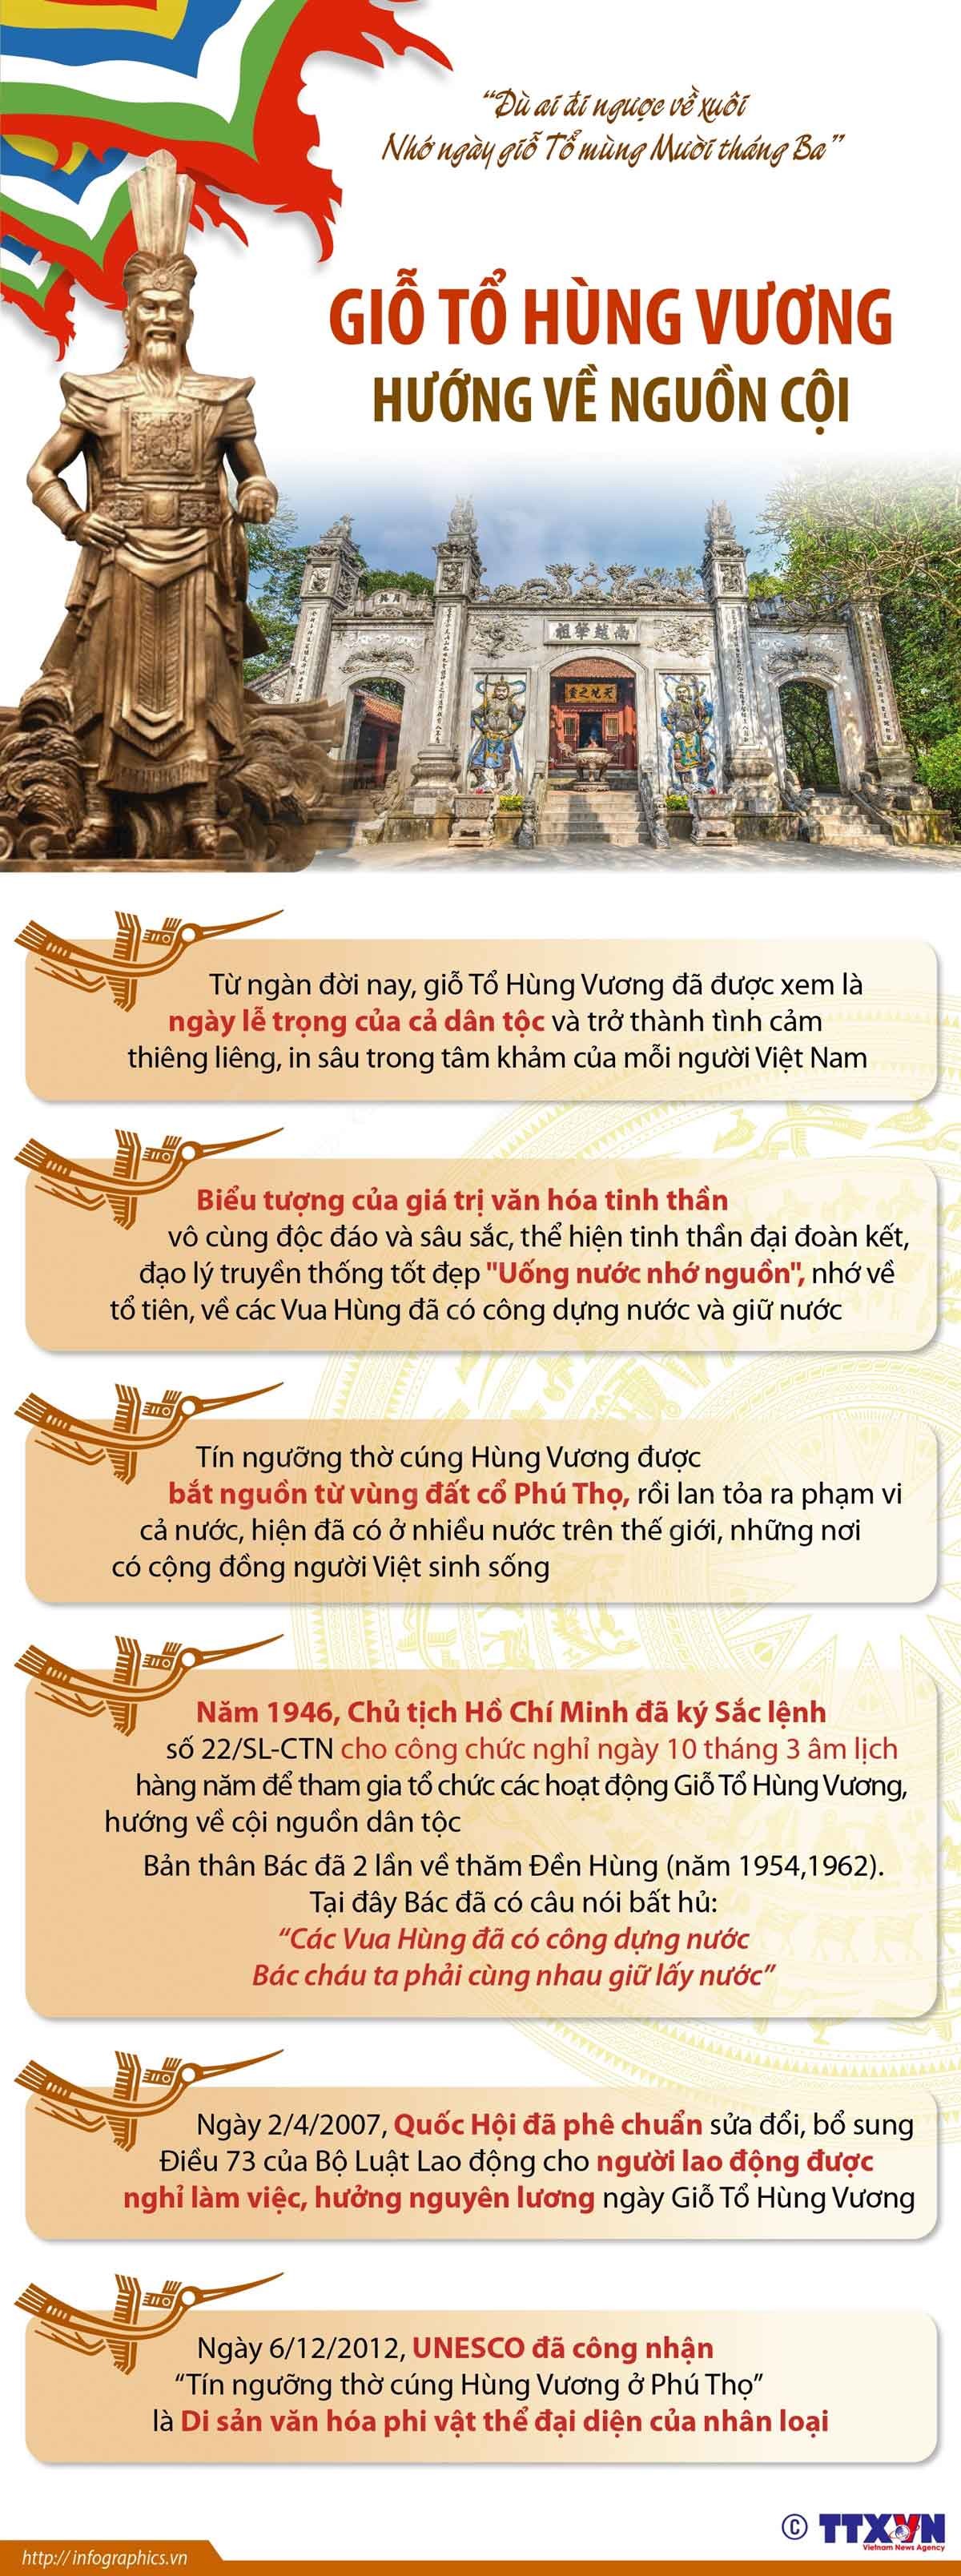 Giỗ Tổ Hùng Vương: Bản sắc văn hóa của người Việt Nam